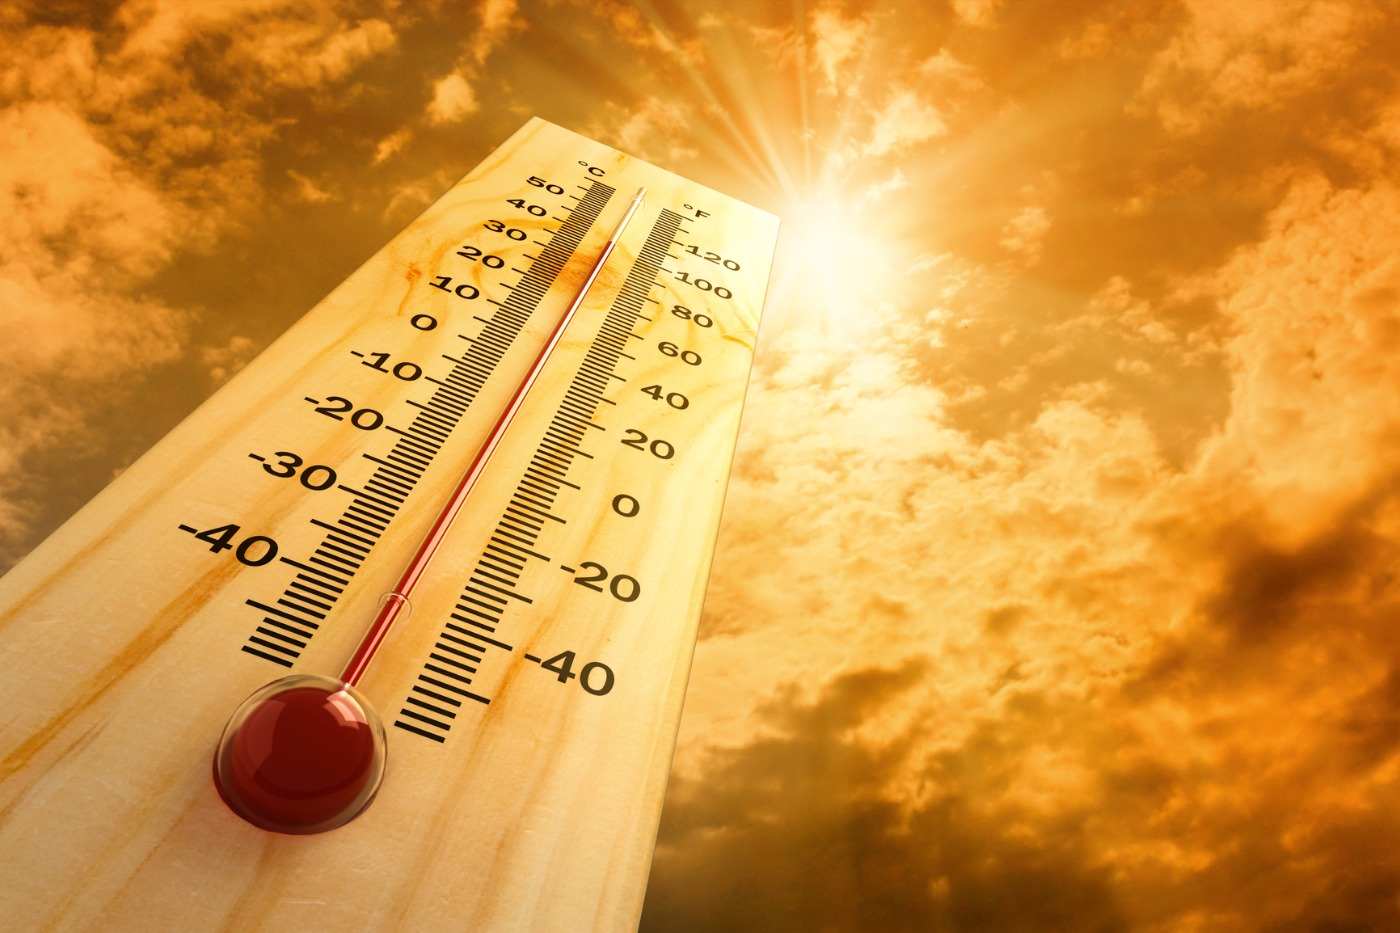 termometer mit quecksilber und steigende temperatur unter der sonne und hitze